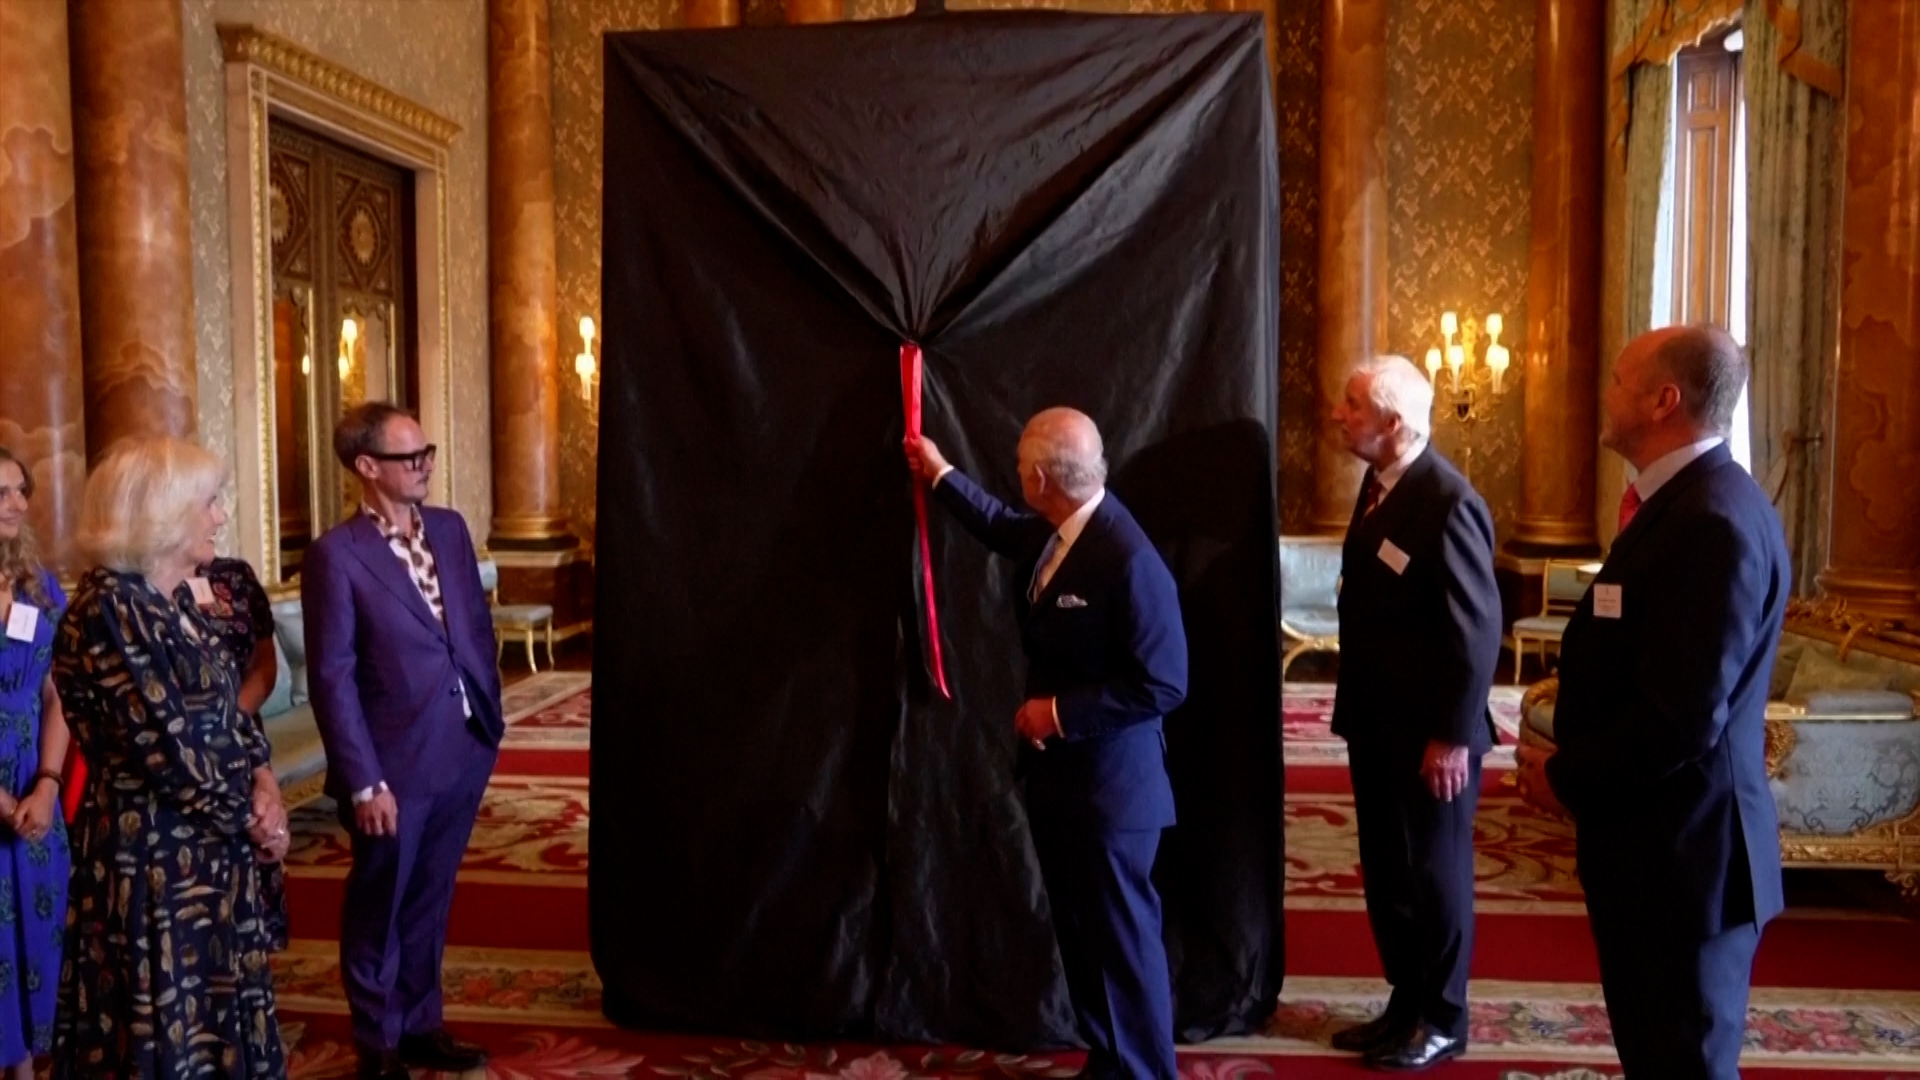 Βίντεο: Ο βασιλιάς Κάρολος αποκάλυψε το πρώτο του πορτρέτο μετά τη στέψη